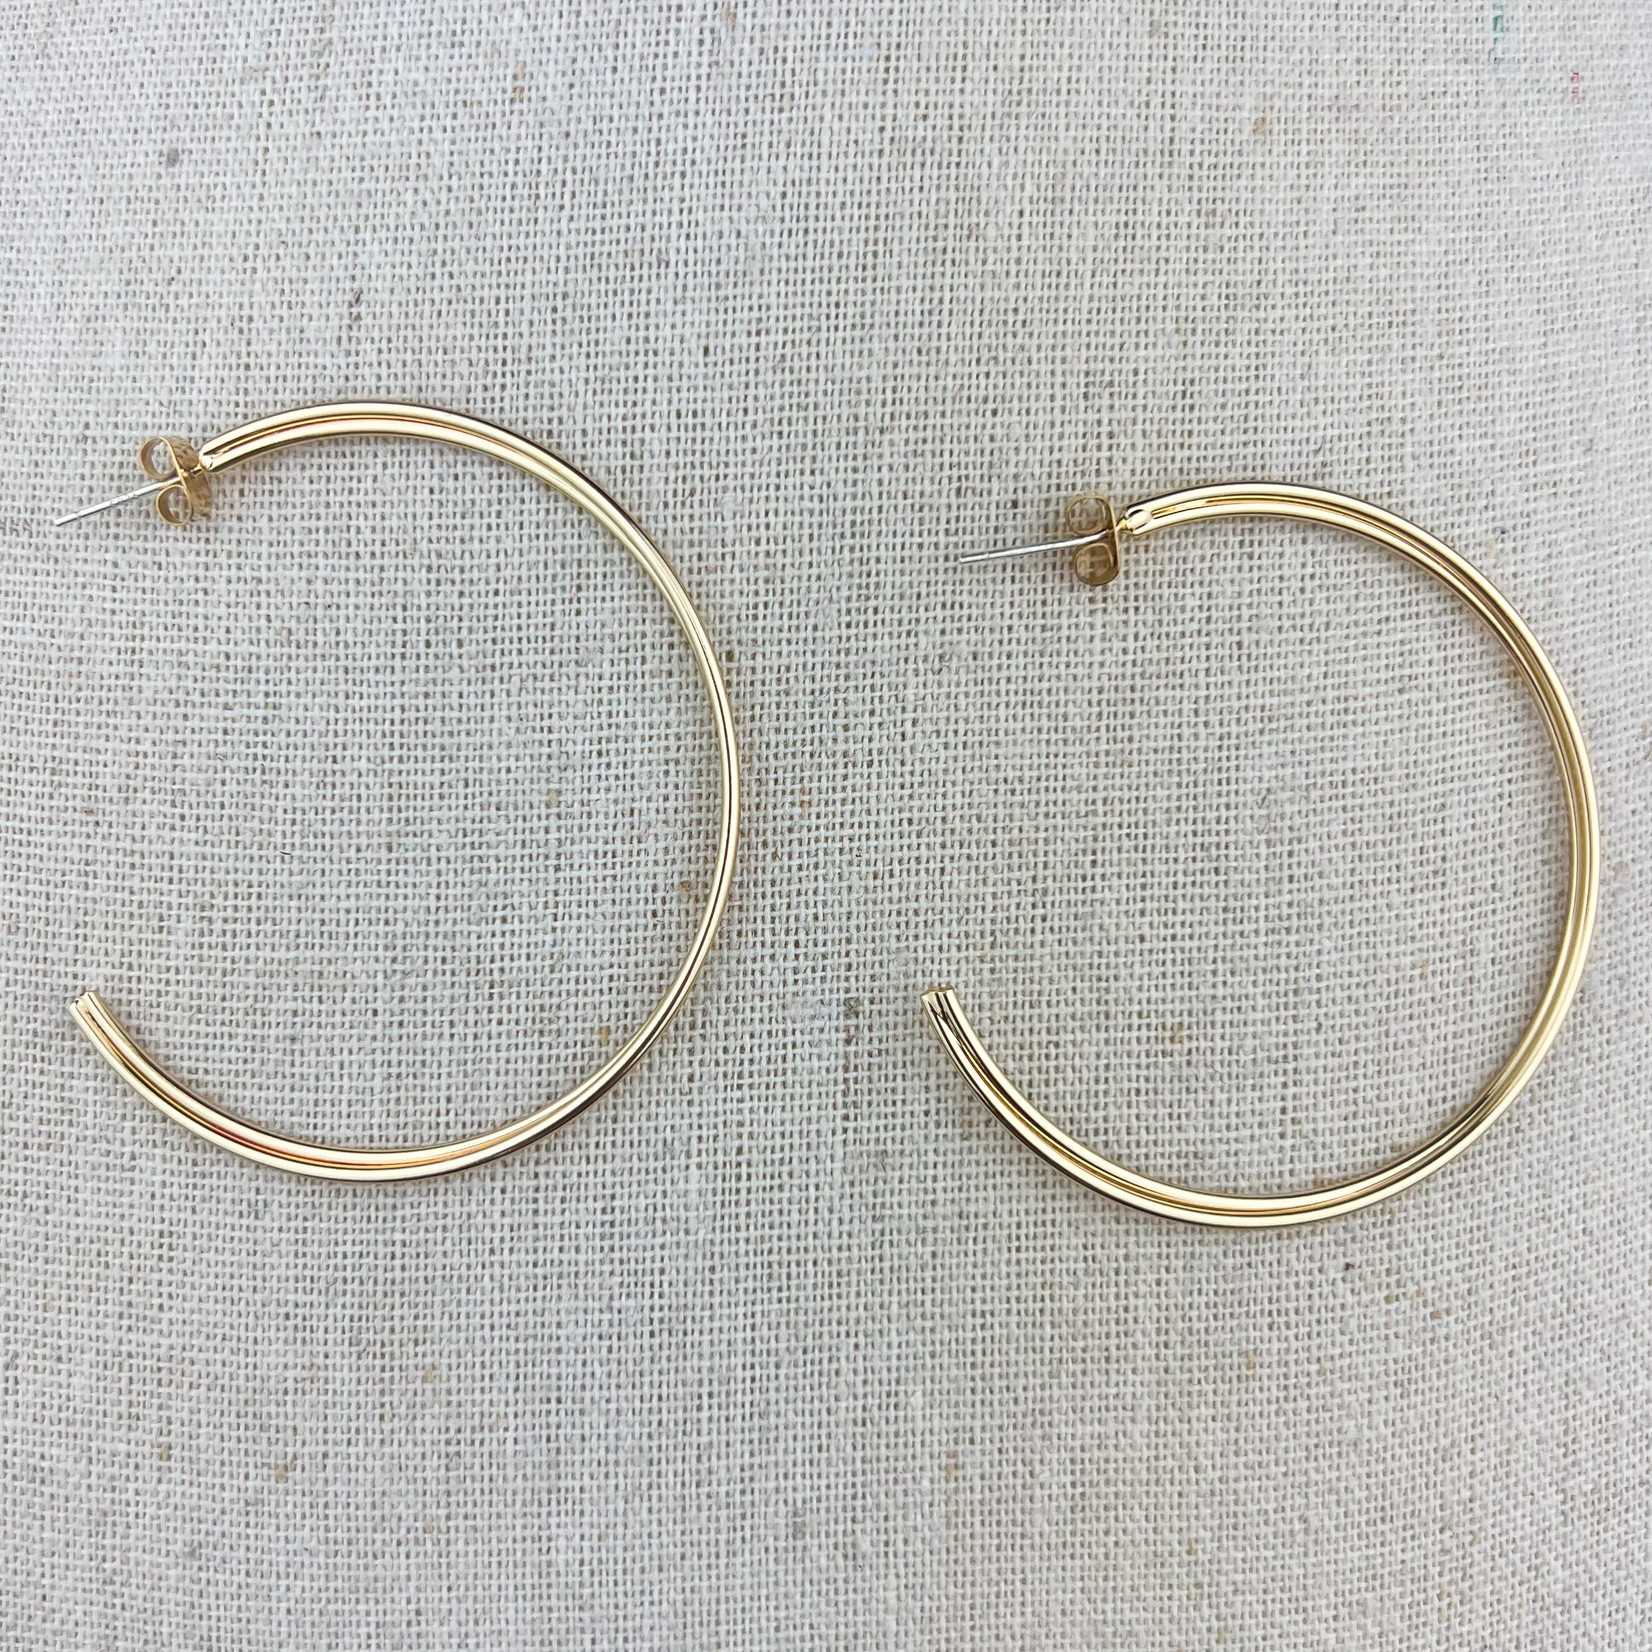 Gold Hoops Earrings 1pc/$6ea *3pcs/$4.50ea *6pcs/$3ea